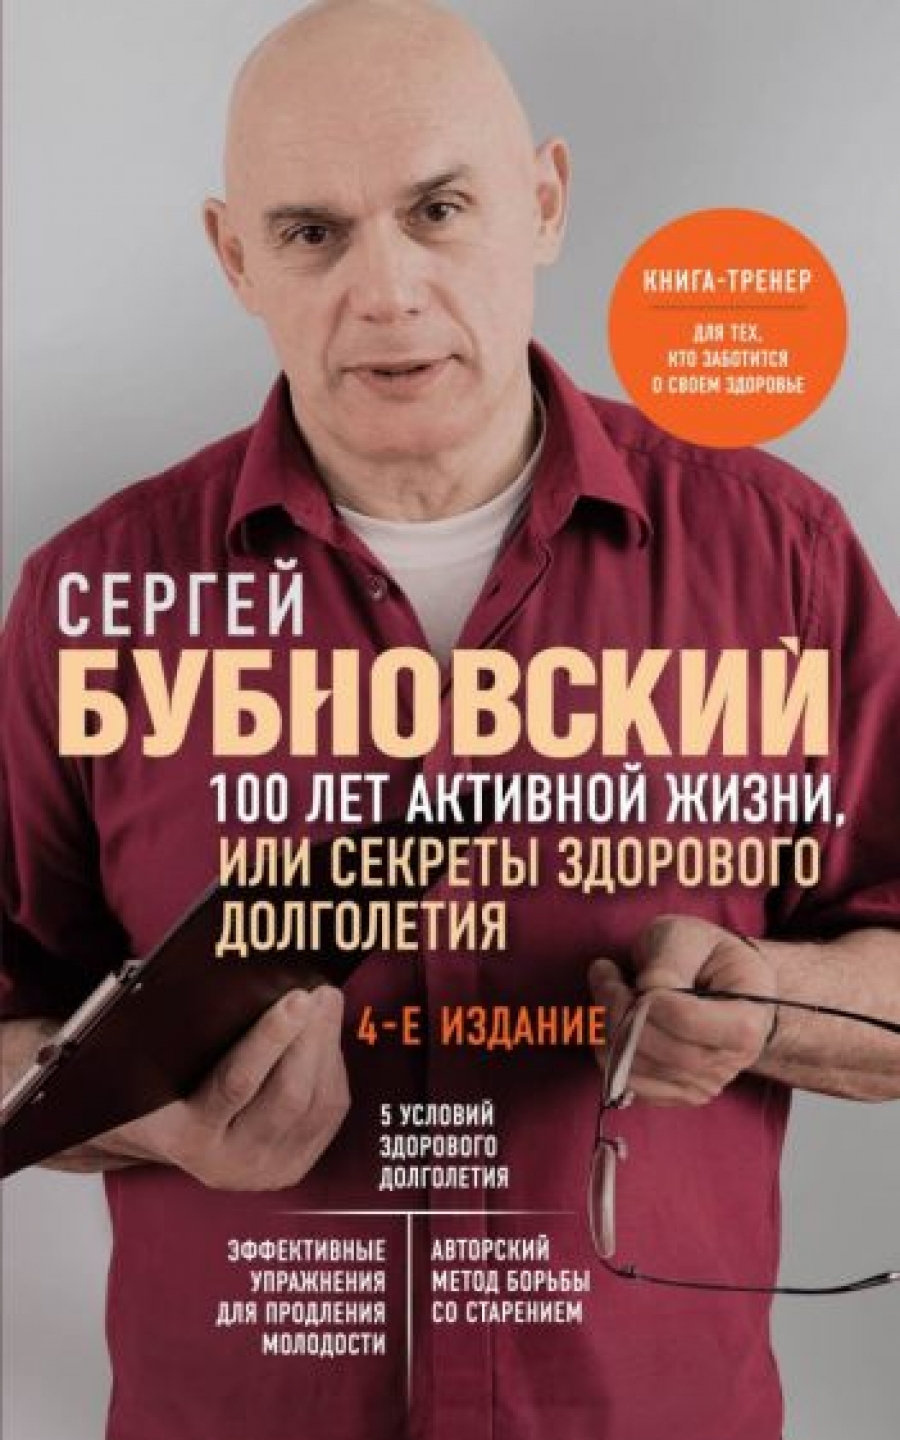 Бубновский С.М. 100 лет активной жизни, или Секреты здорового долголетия. 4-е издание 